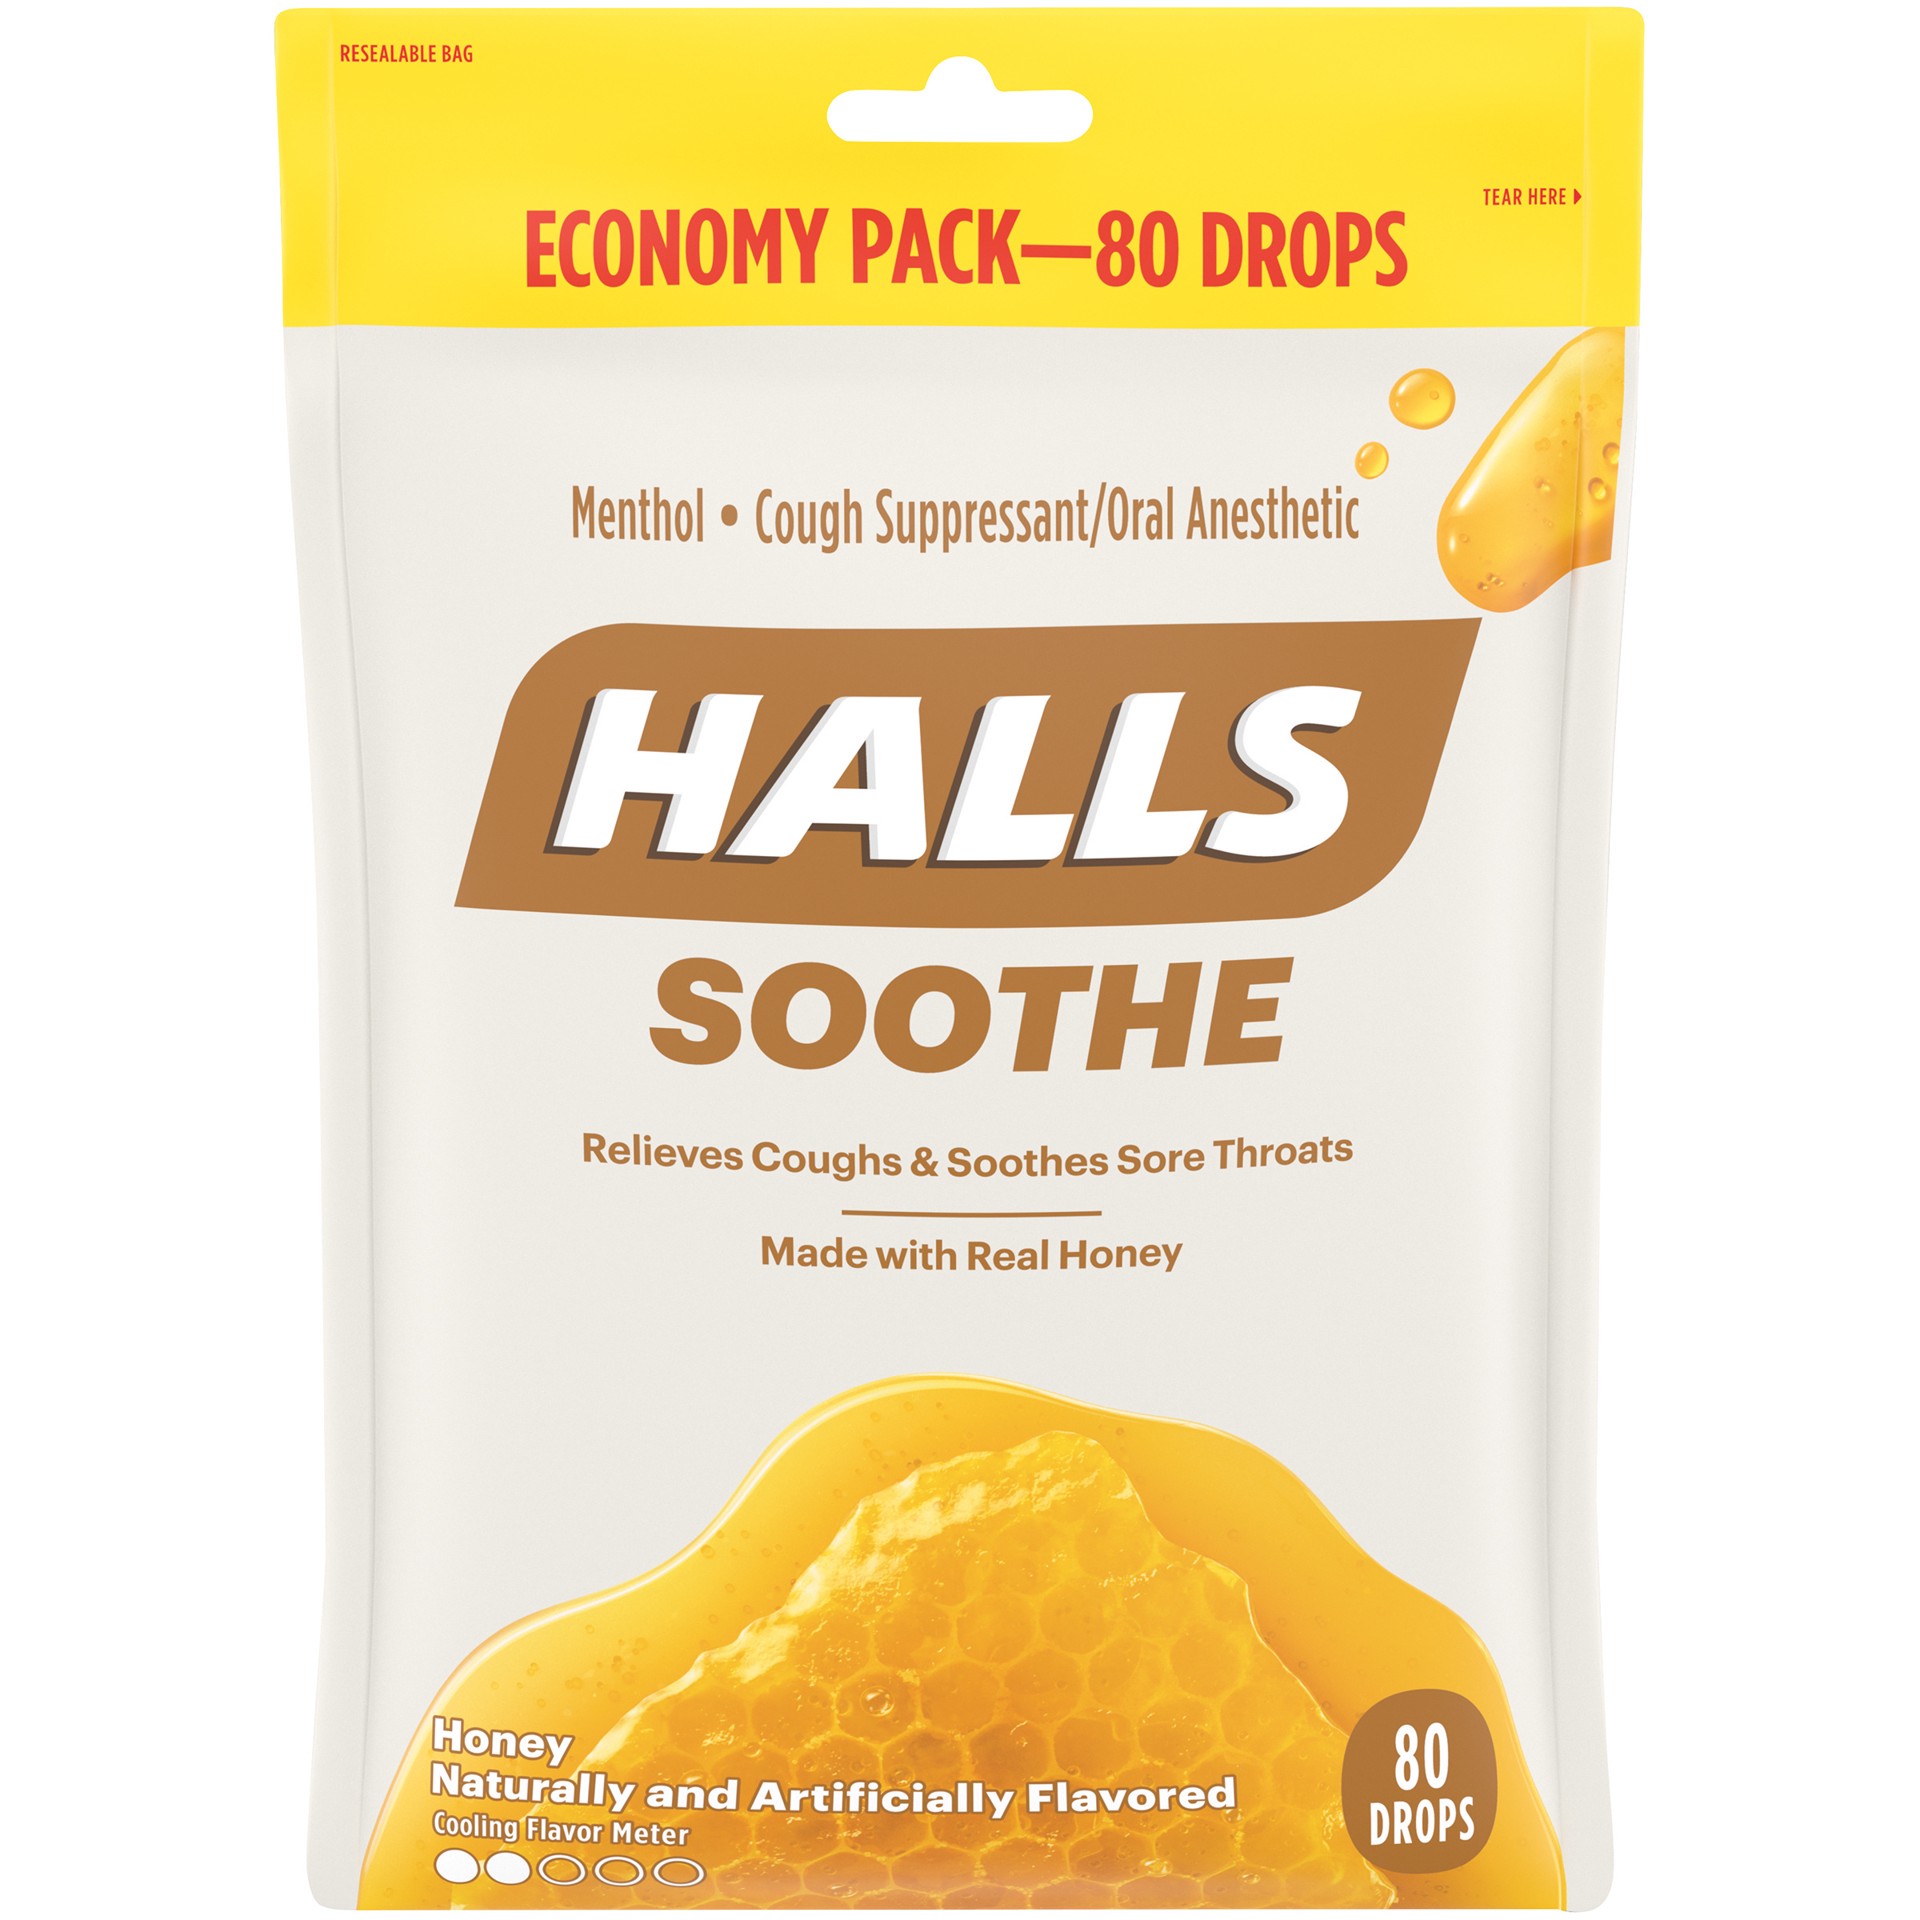 slide 5 of 5, HALLS Soothe Honey Cough Drops, Economy Pack, 80 drops, 0.55 lb